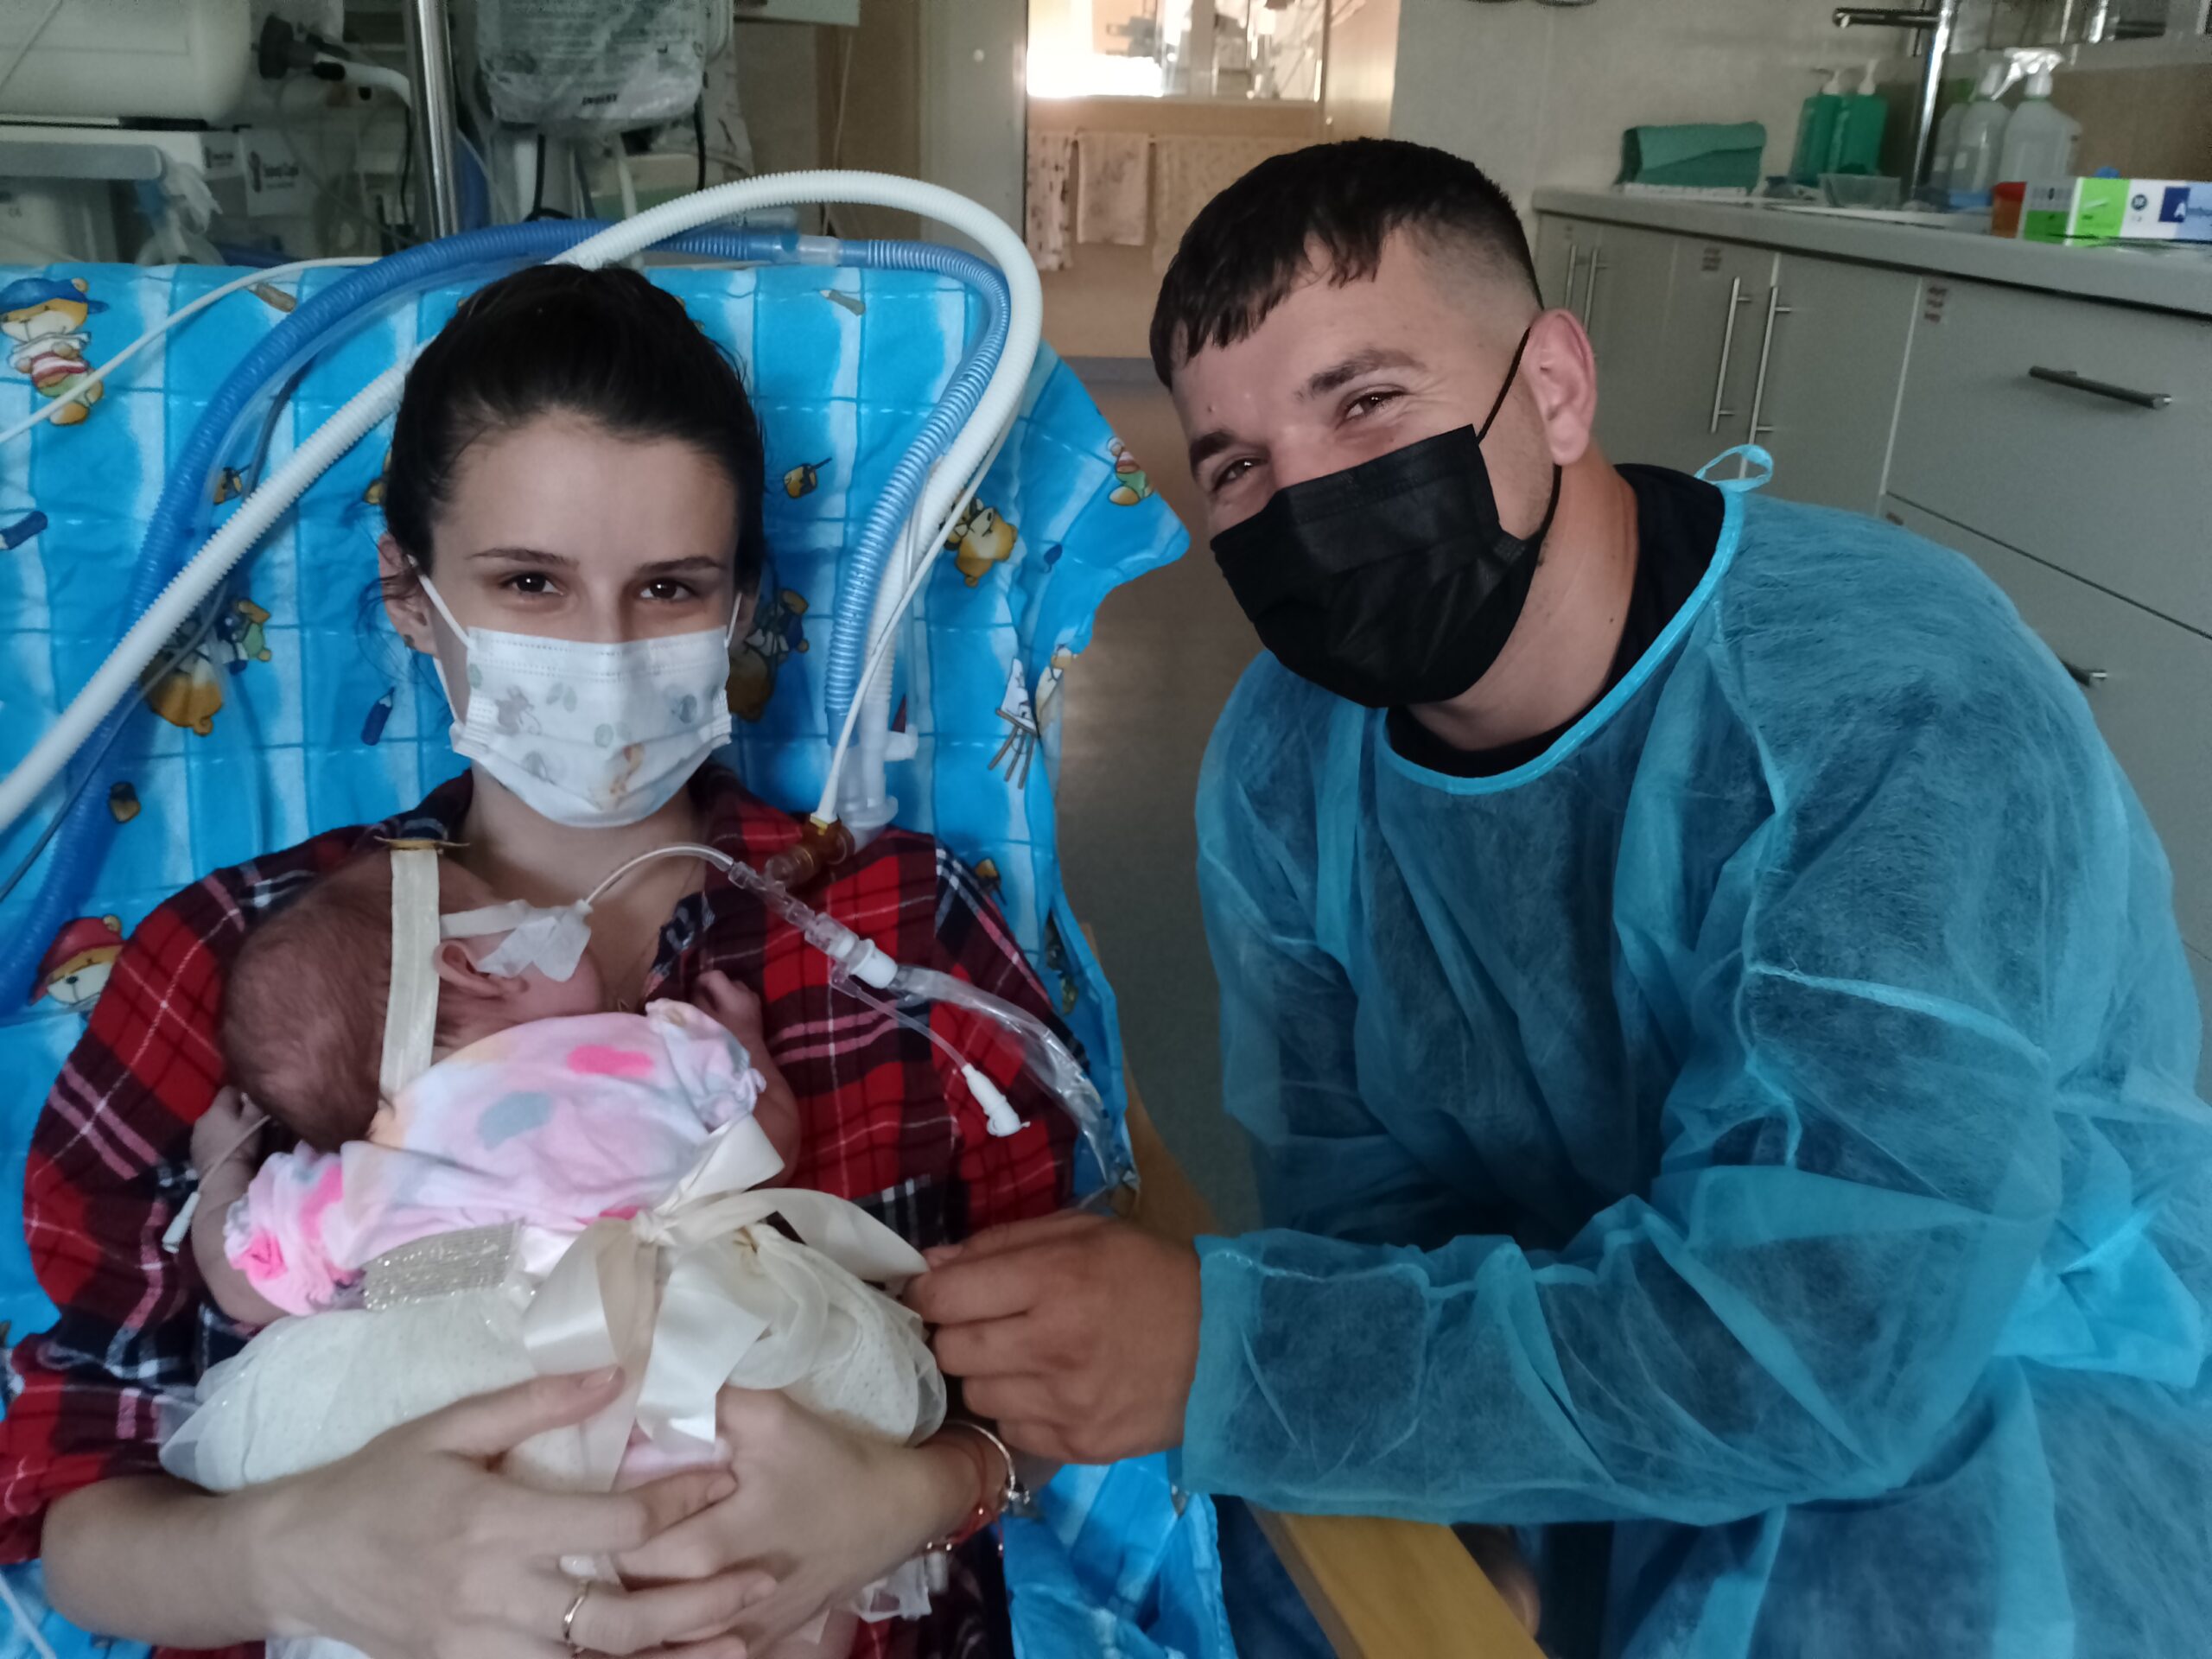 Naștere prematură la Sibiu. „Fetița a avut 780 de grame și a fost intubată 3 luni. După 5 luni de spitalizare, am luat-o acasă sănătoasă”